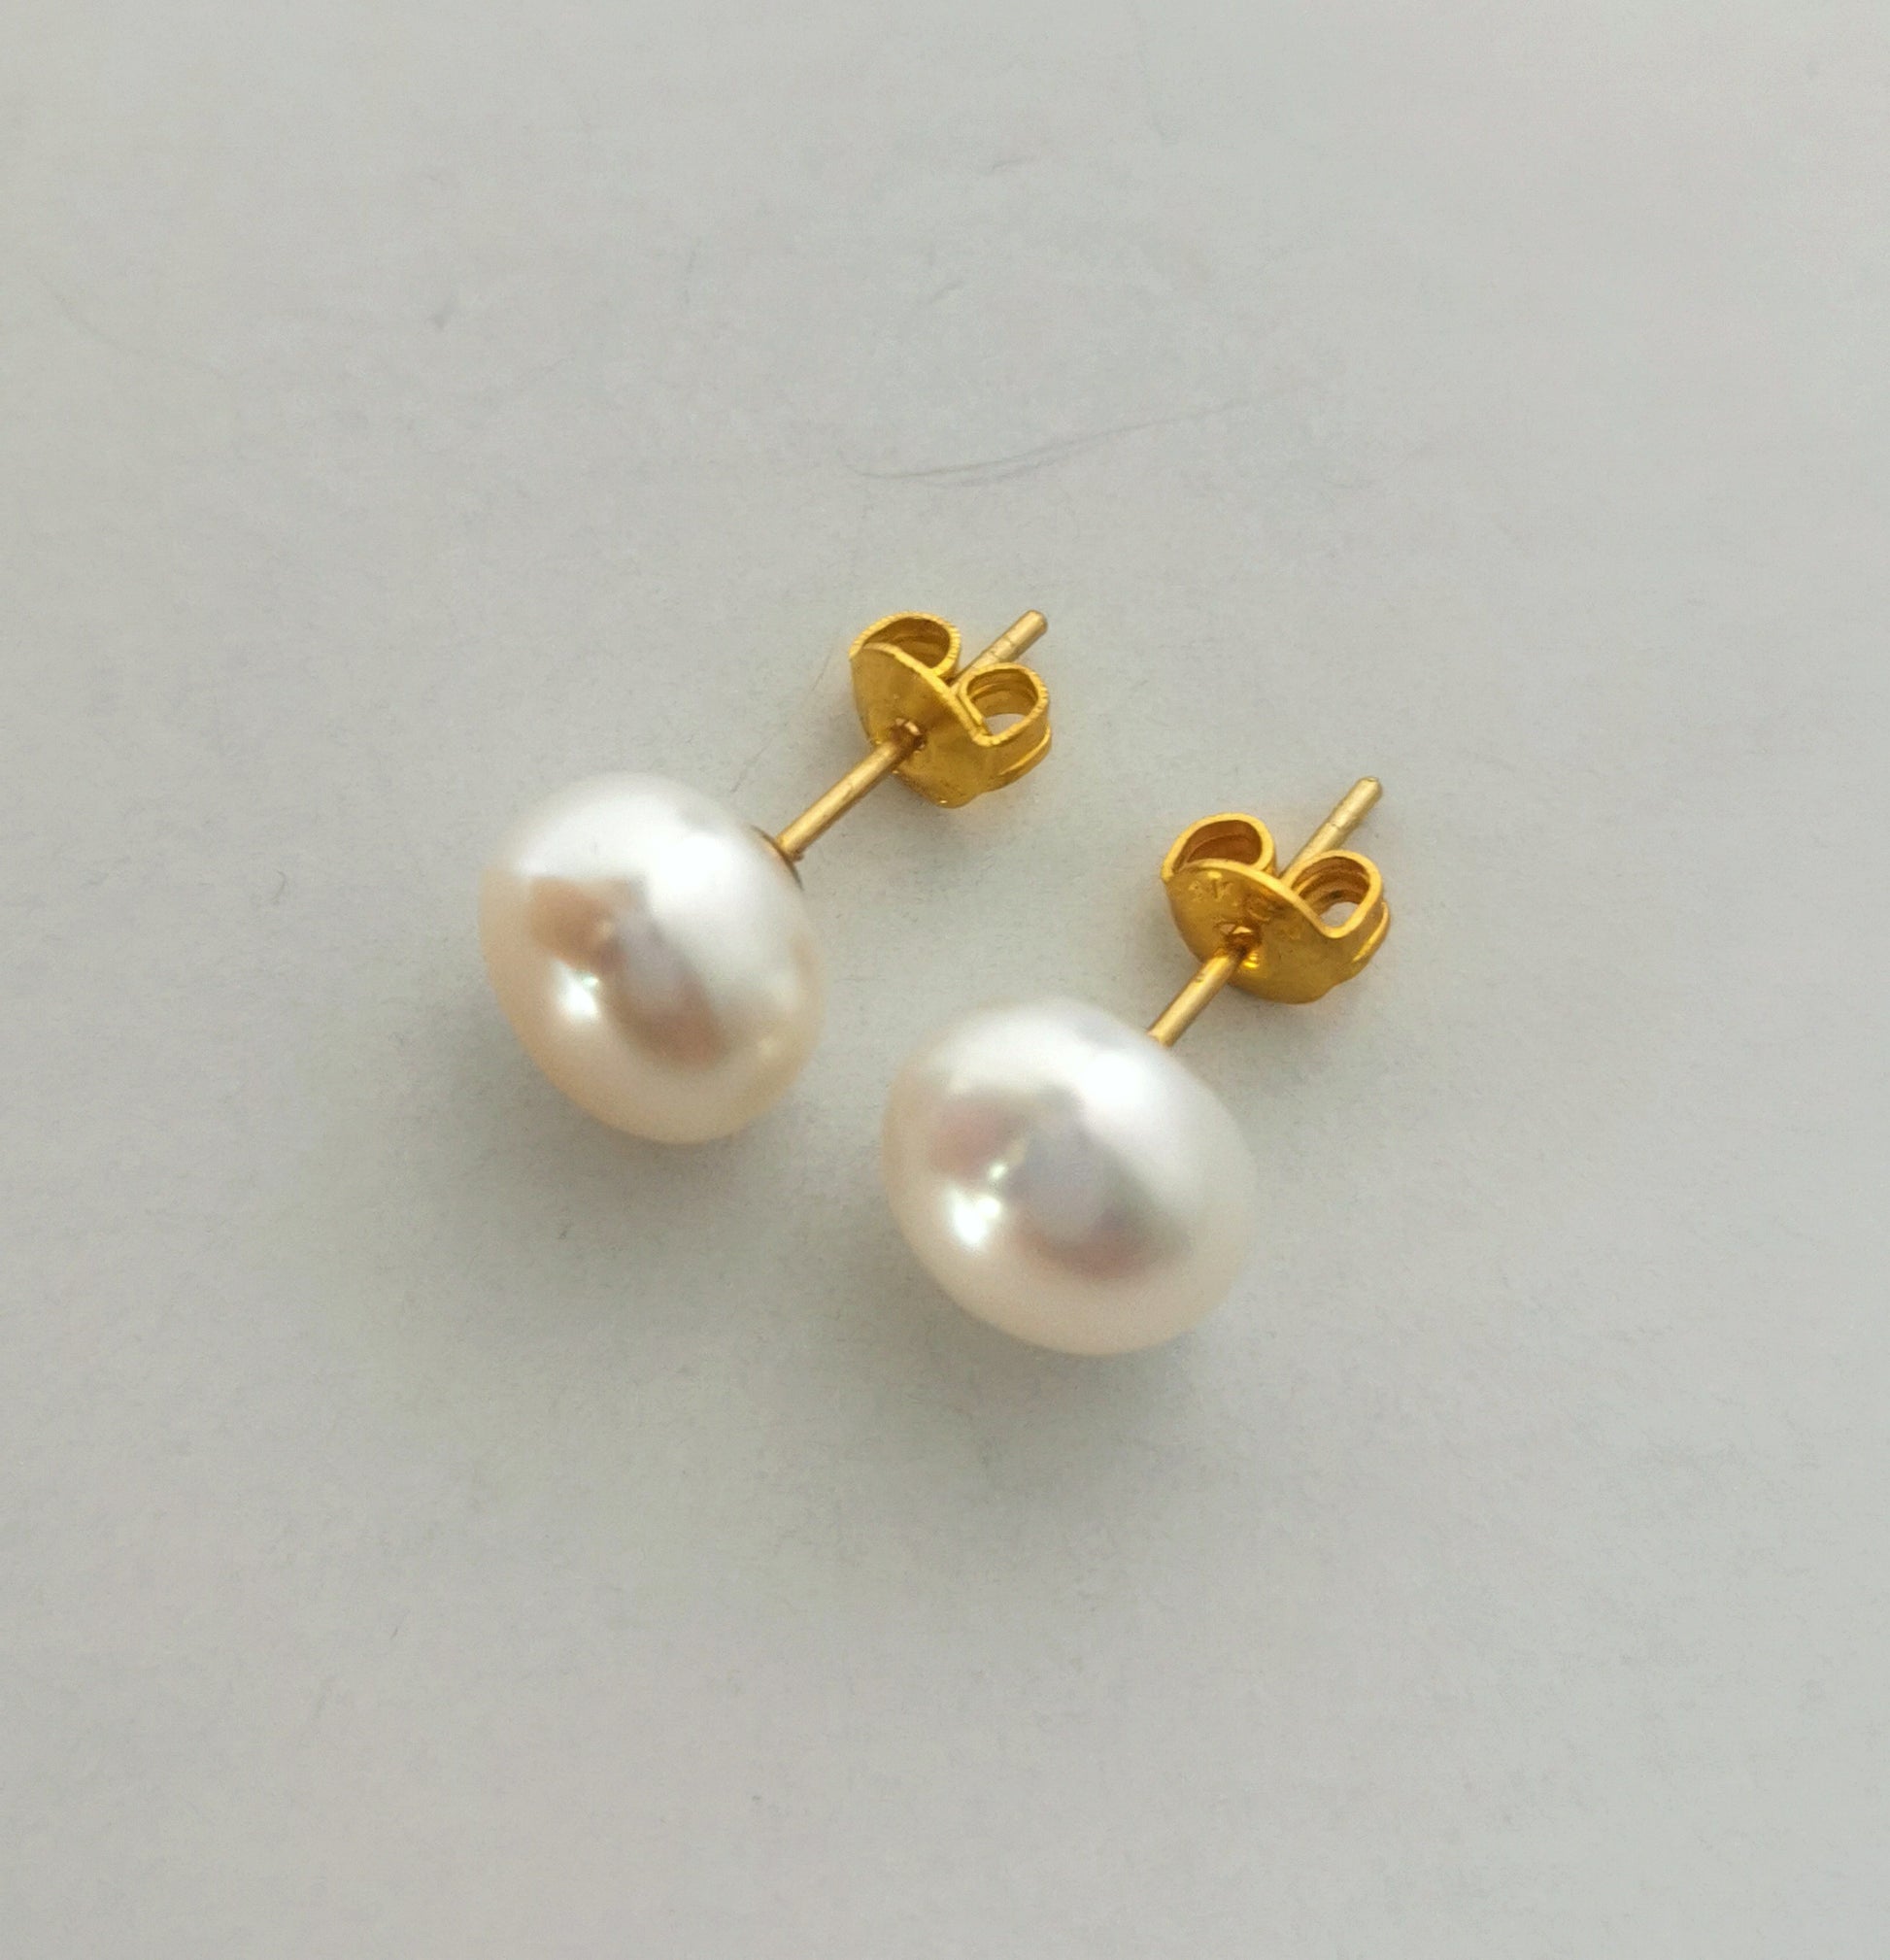 Boucles d'oreilles perles de culture blanches 9mm montées sur clous plaqués or. Présentées cote à cote, perles en bas, fermoirs inclinées vers la gauche, posées sur un fond blanc. Vue de face.